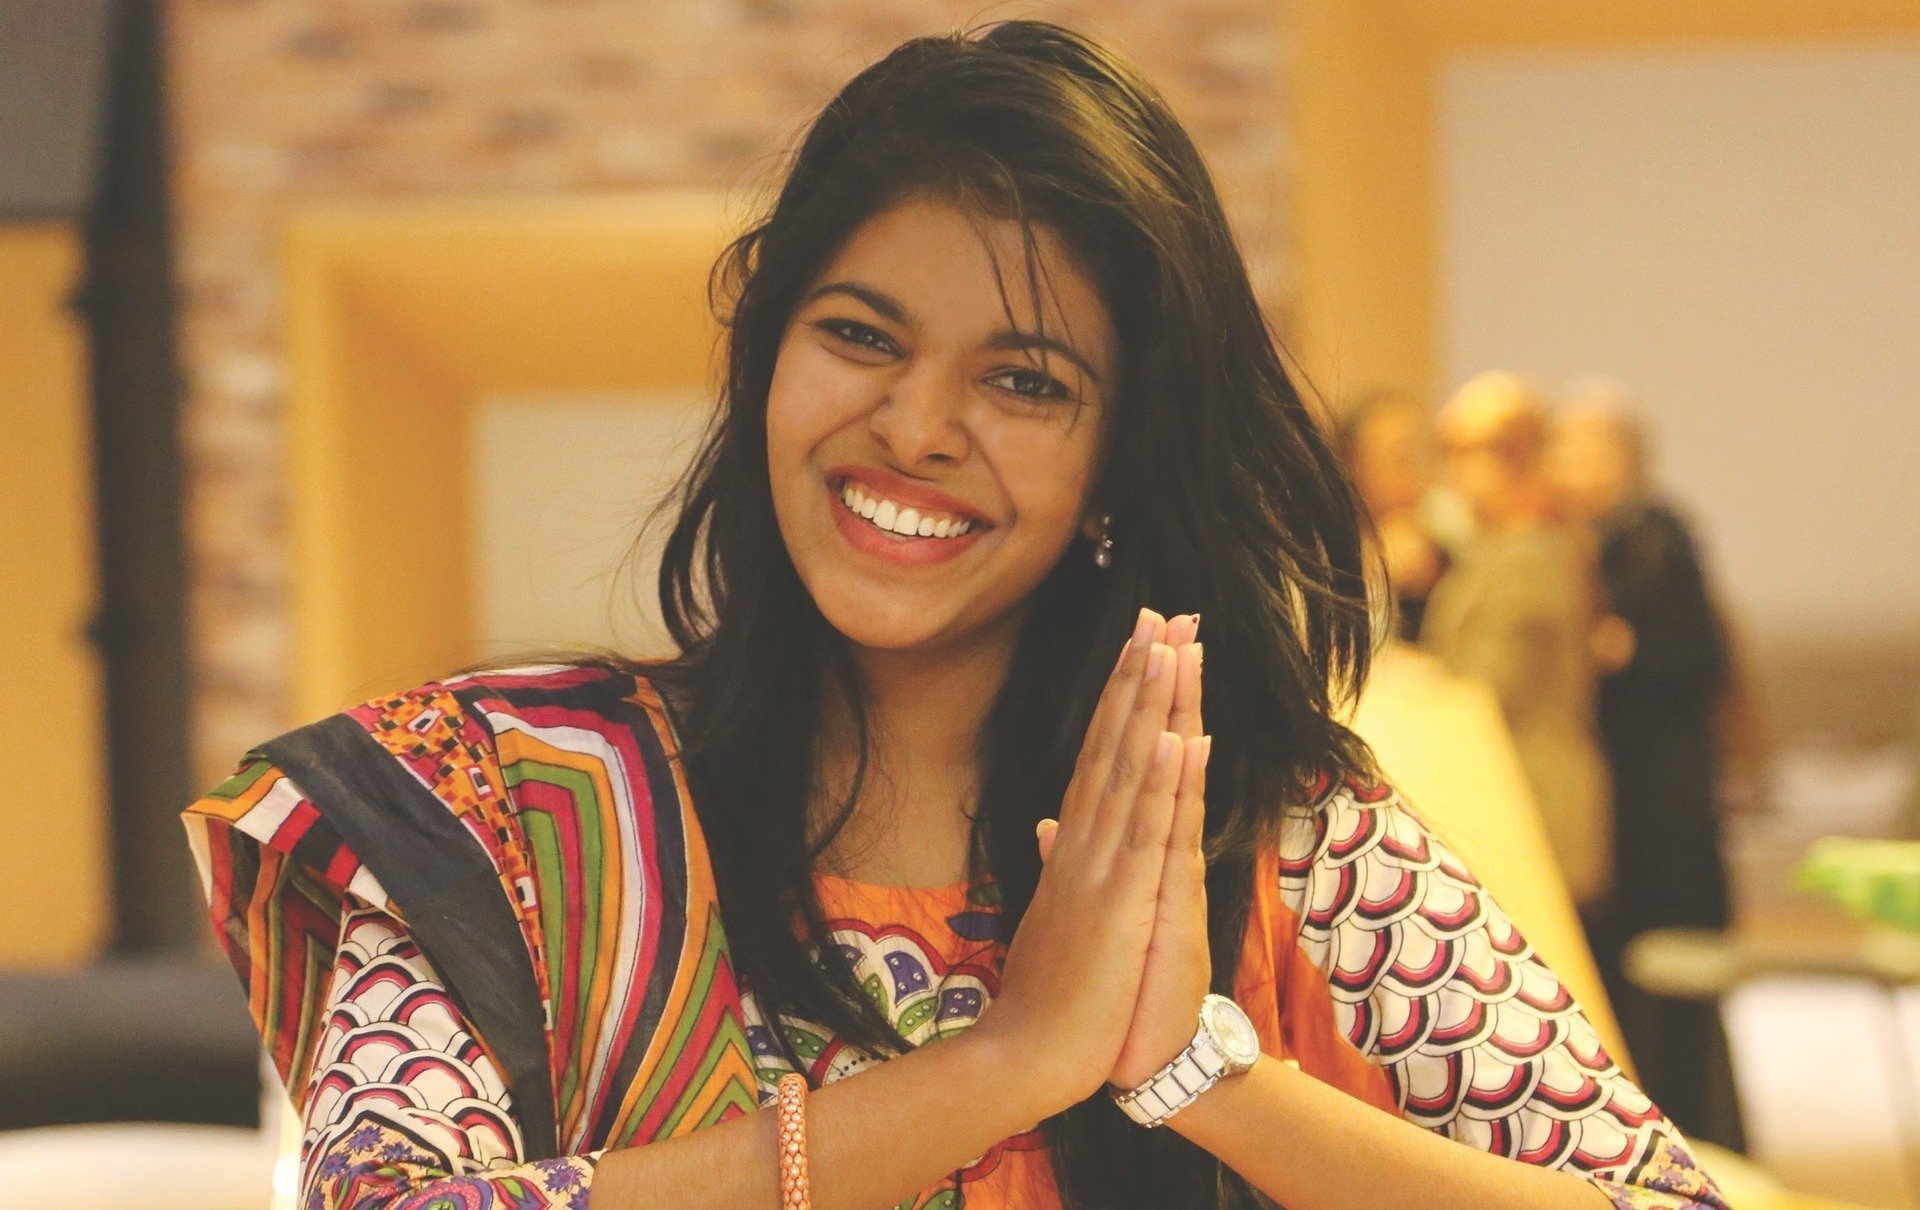 Mulher sorrindo, com as mãos unidas, usando roupas indianas